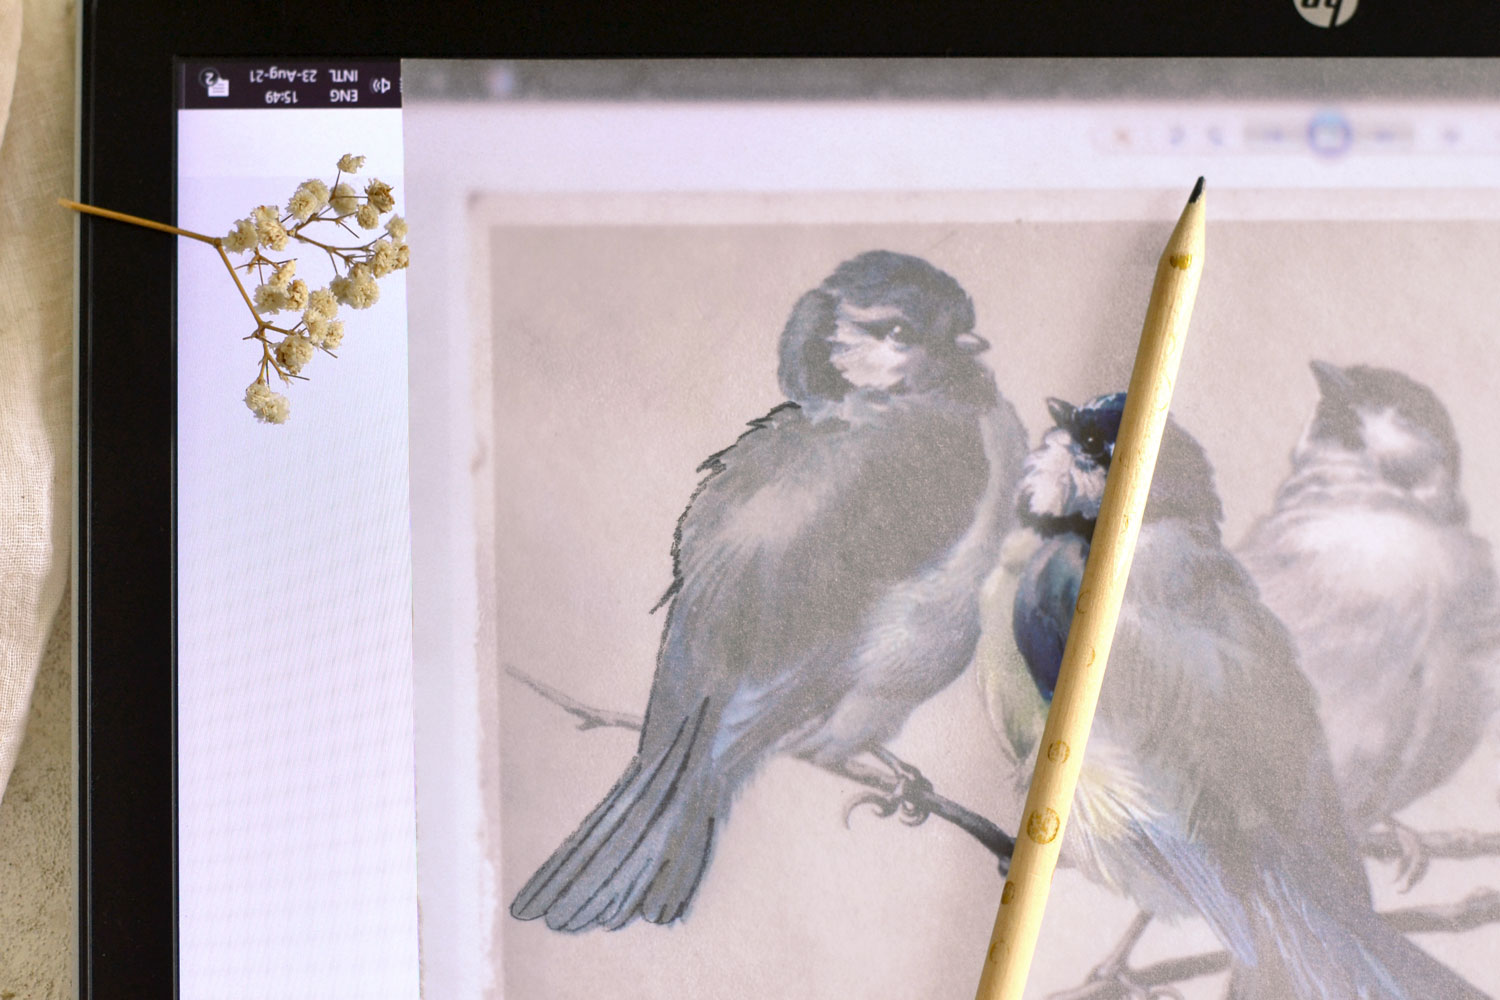 DIY Tracing Paper Sketch Birds